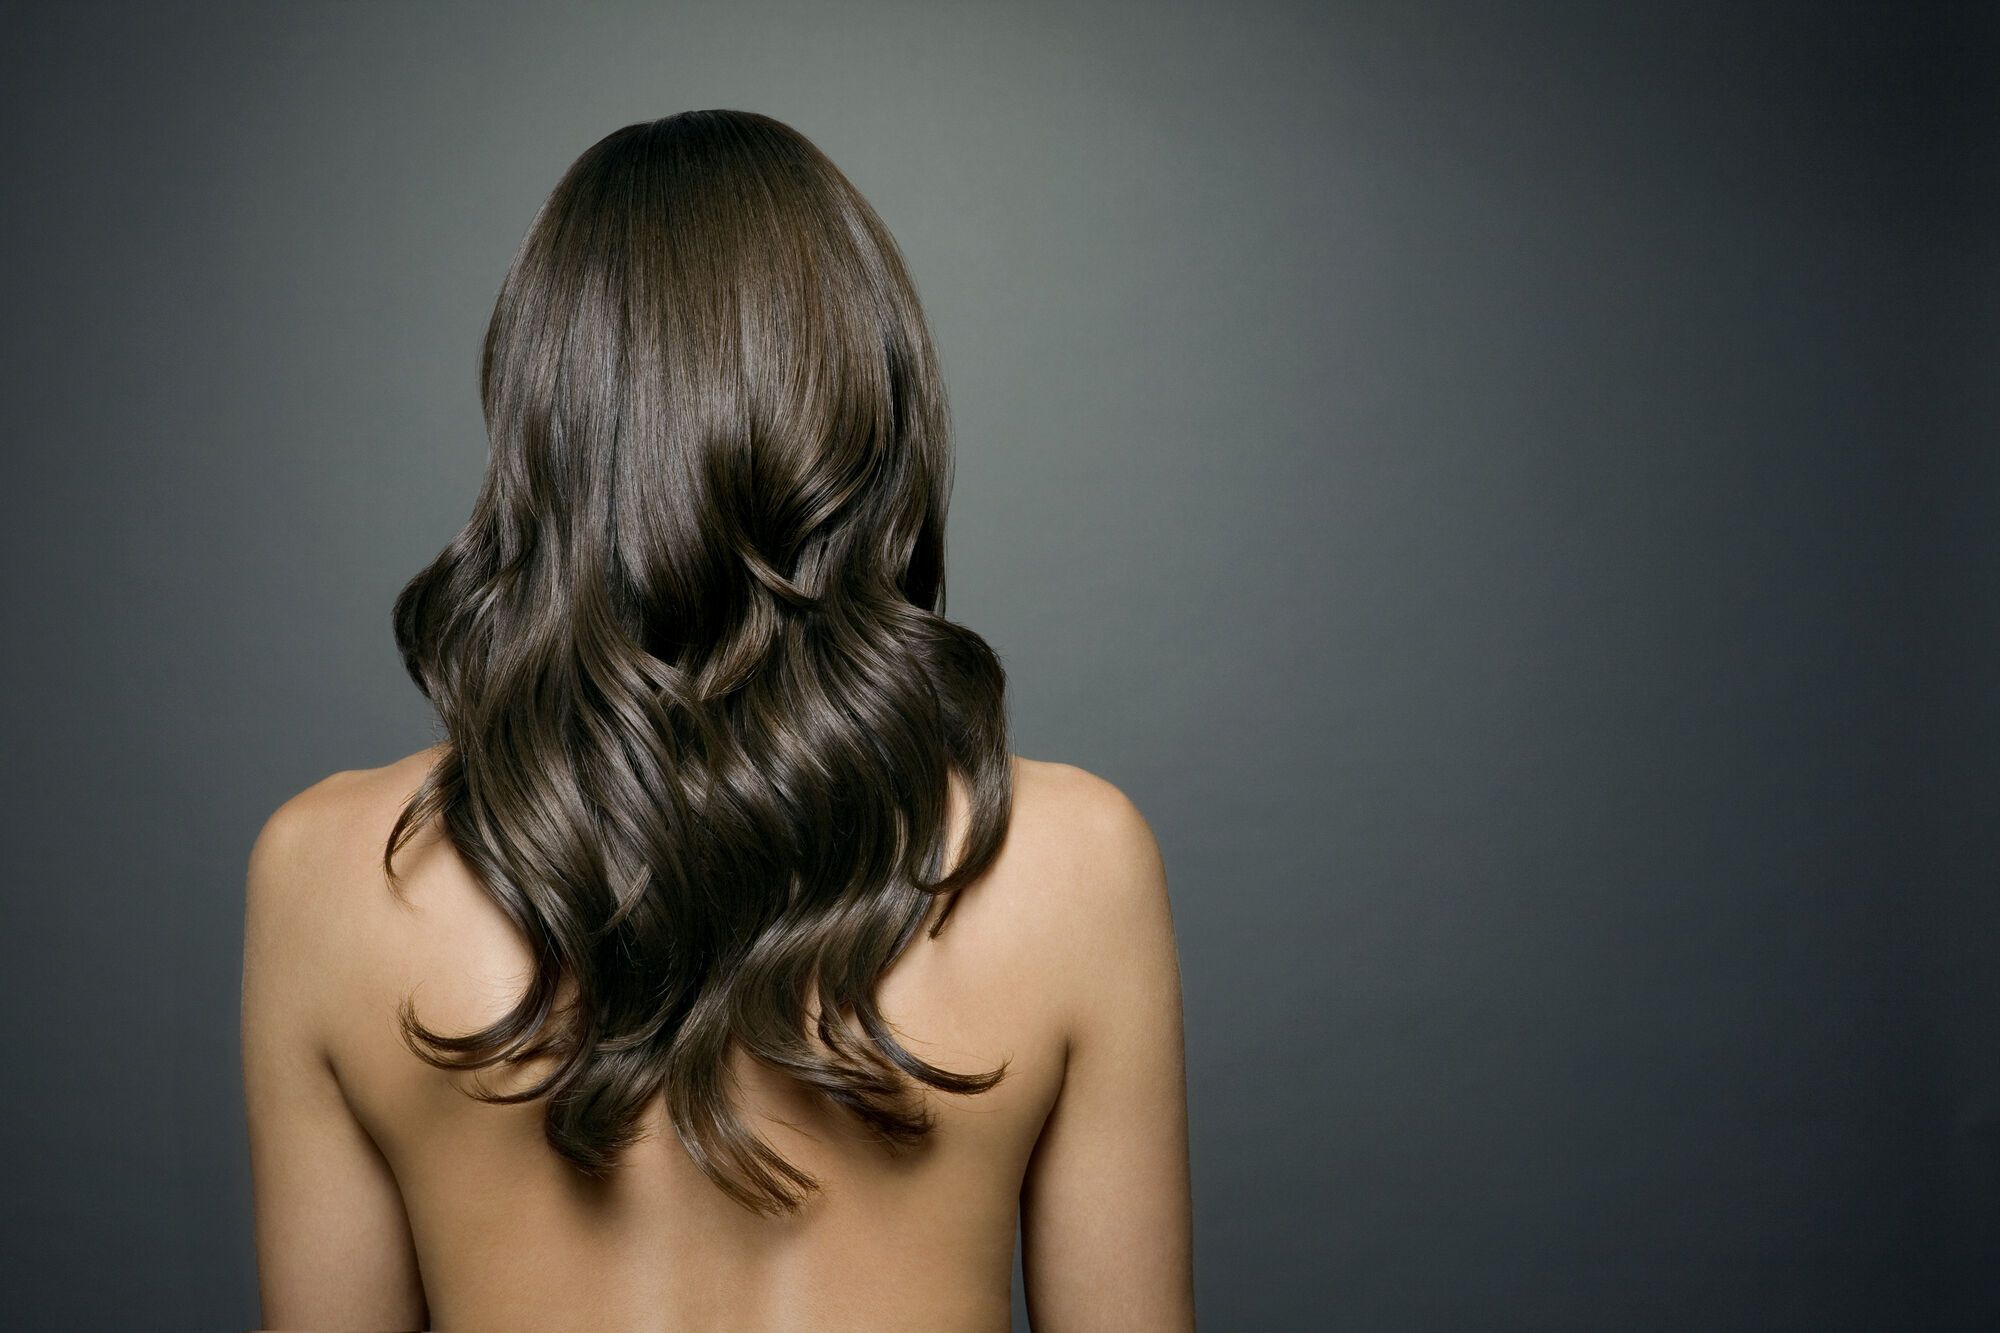 Добавят объем и придадут образу изысканности: пять лучших причесок для тонких волос. Фото 